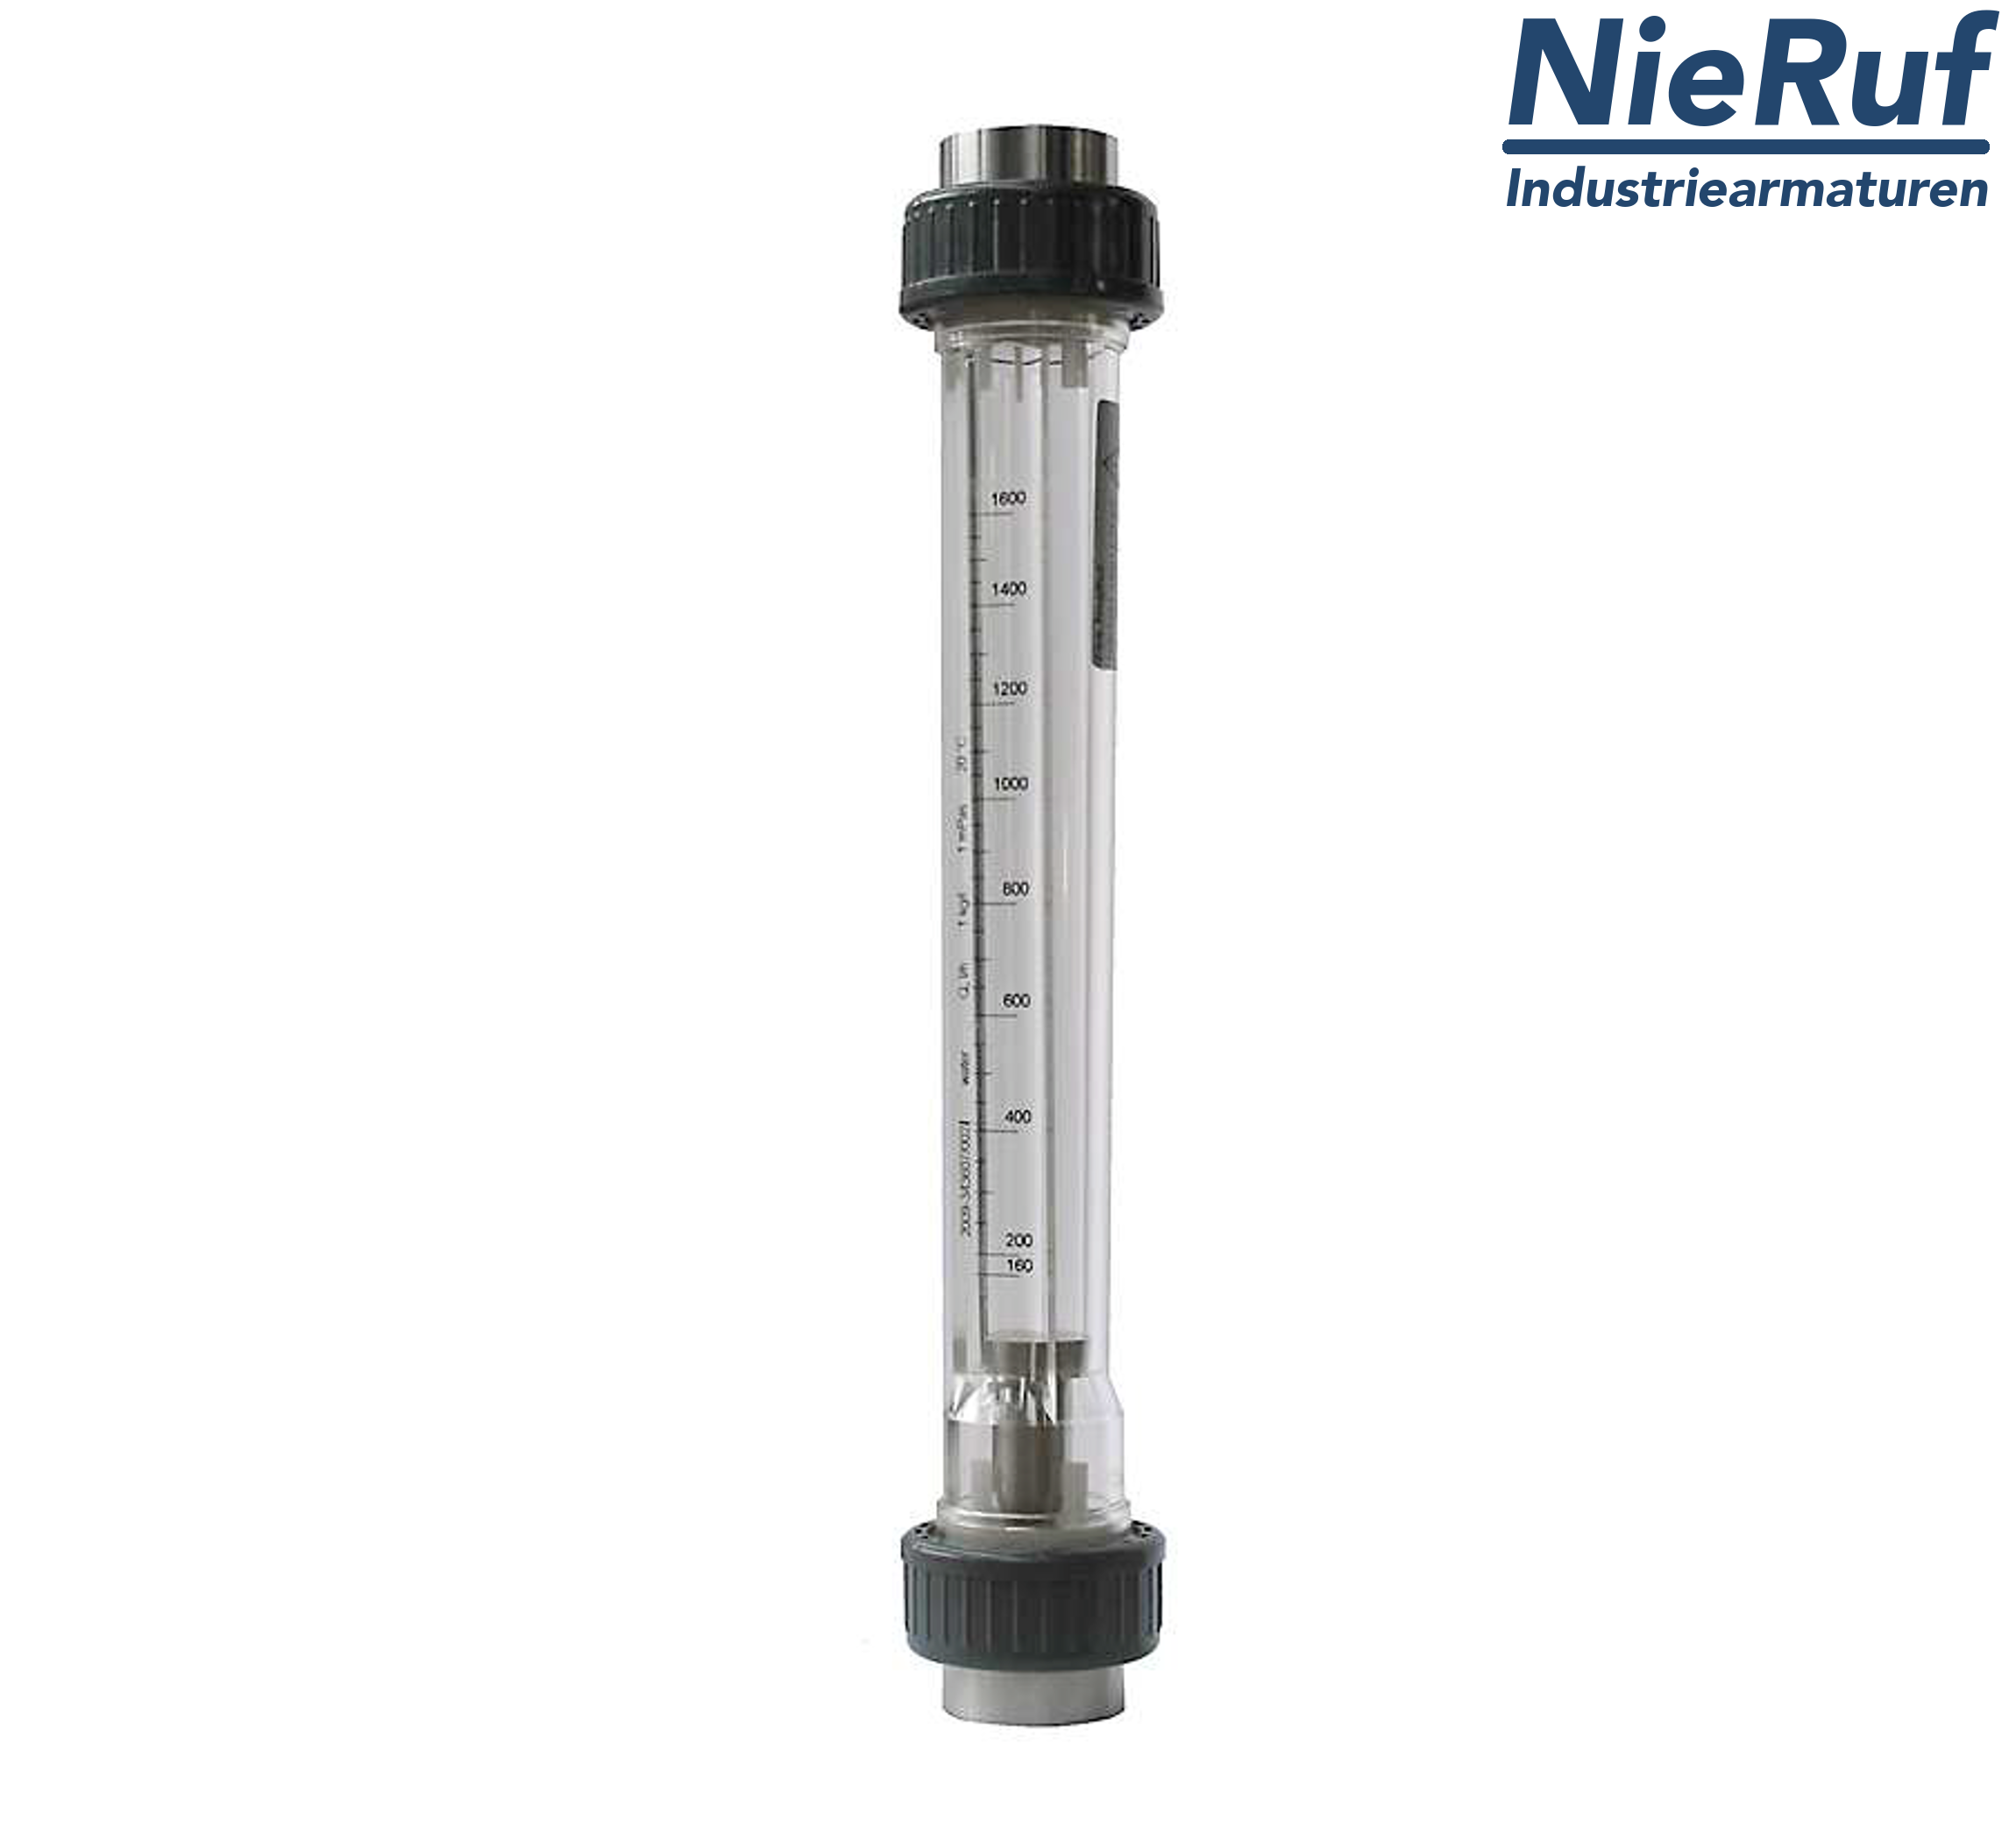 Variable area flowmeter 2" Inch NPT 16000.0 - 160000 l/h air NBR